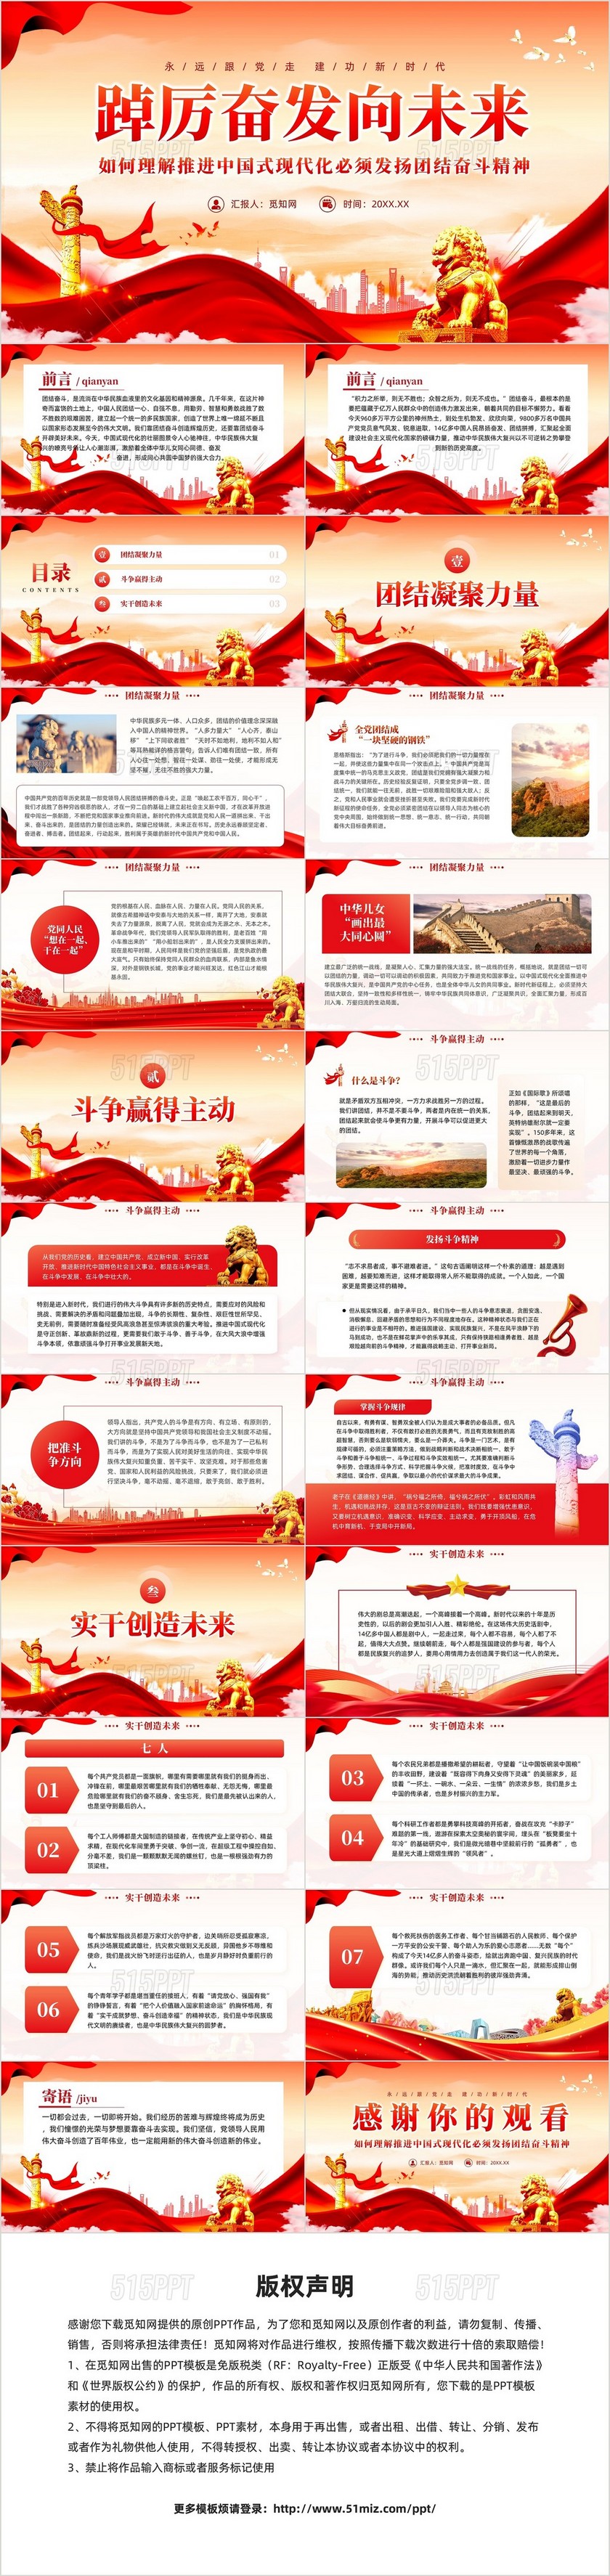 红色党建如何理解中国式现代化必须发扬团结奋斗精神党课课件PPT